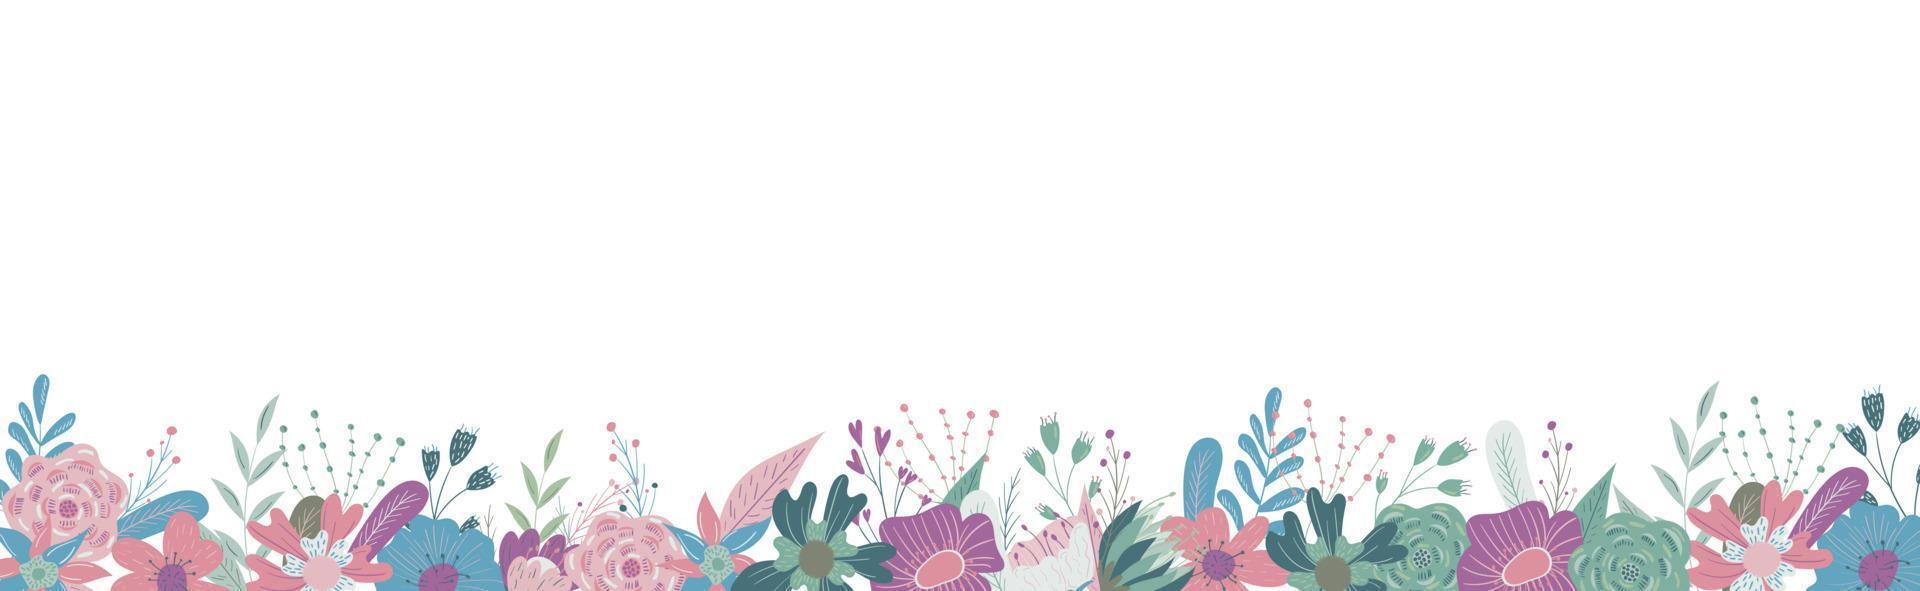 fiori selvatici e da giardino in fiore. elementi decorativi di design floreale. illustrazione del fumetto piatto. striscione vettore